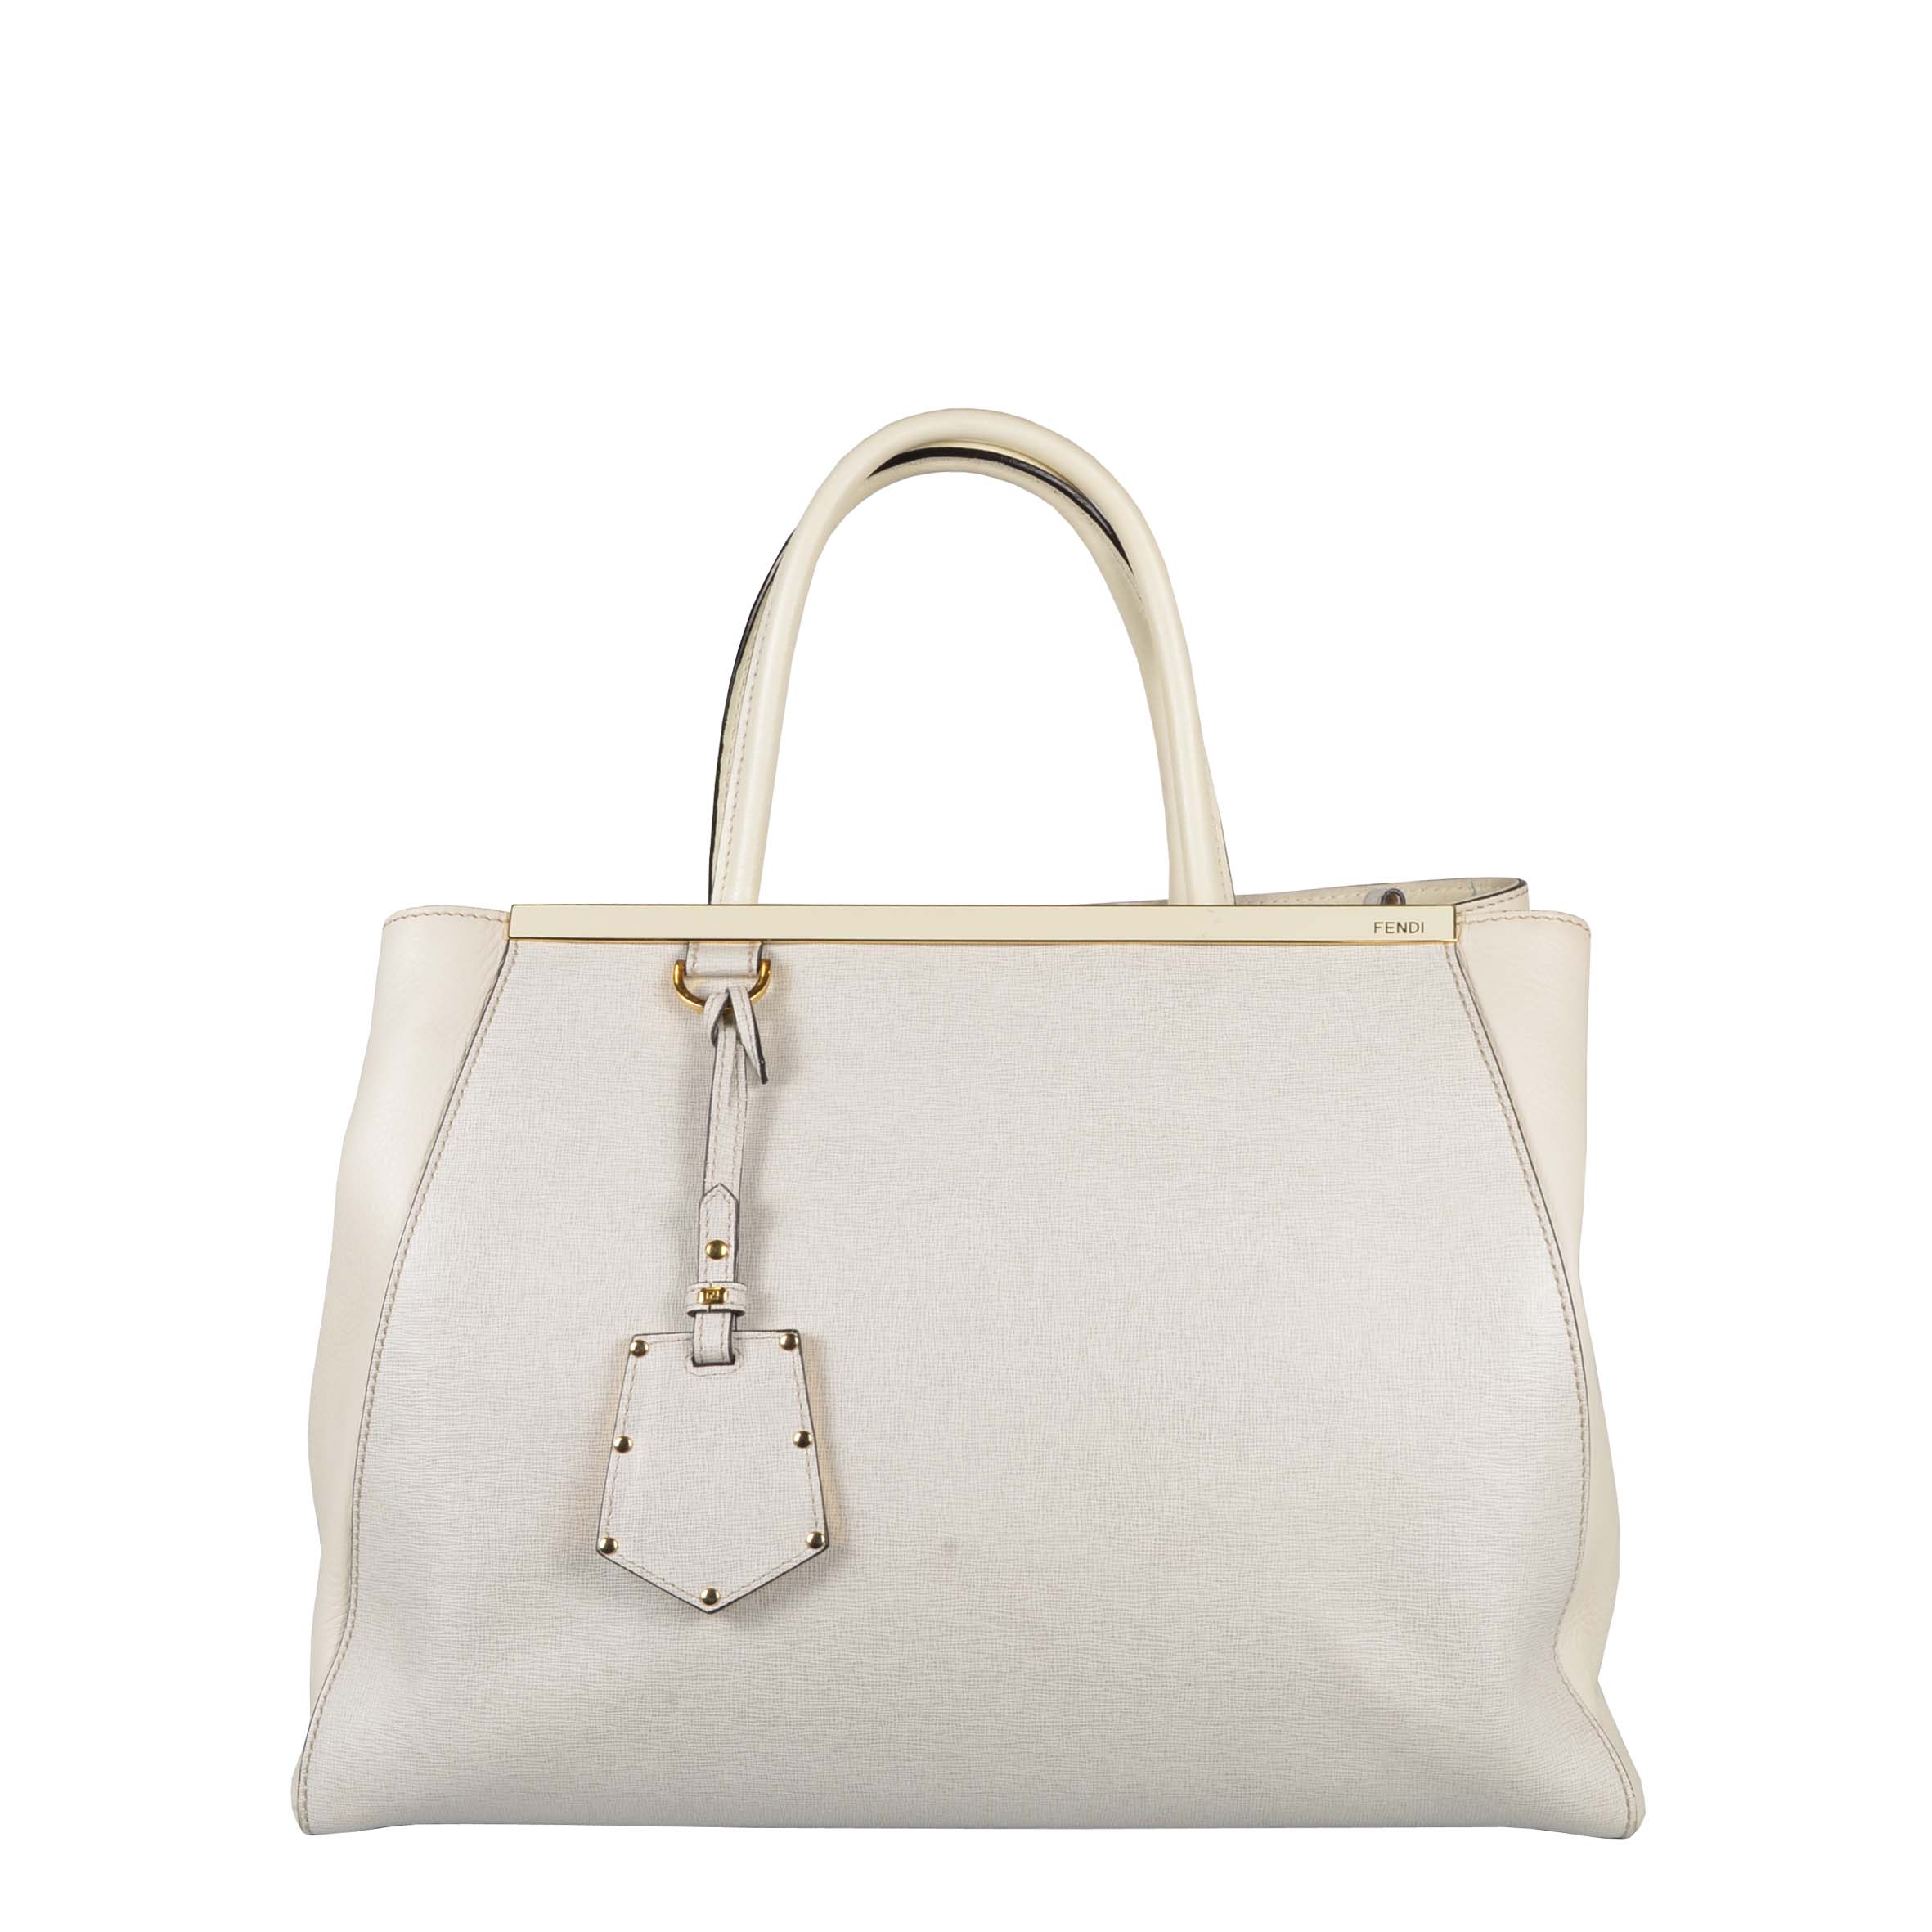 Fendi Tasche 2Jours Leather Handbag Perlweiß white